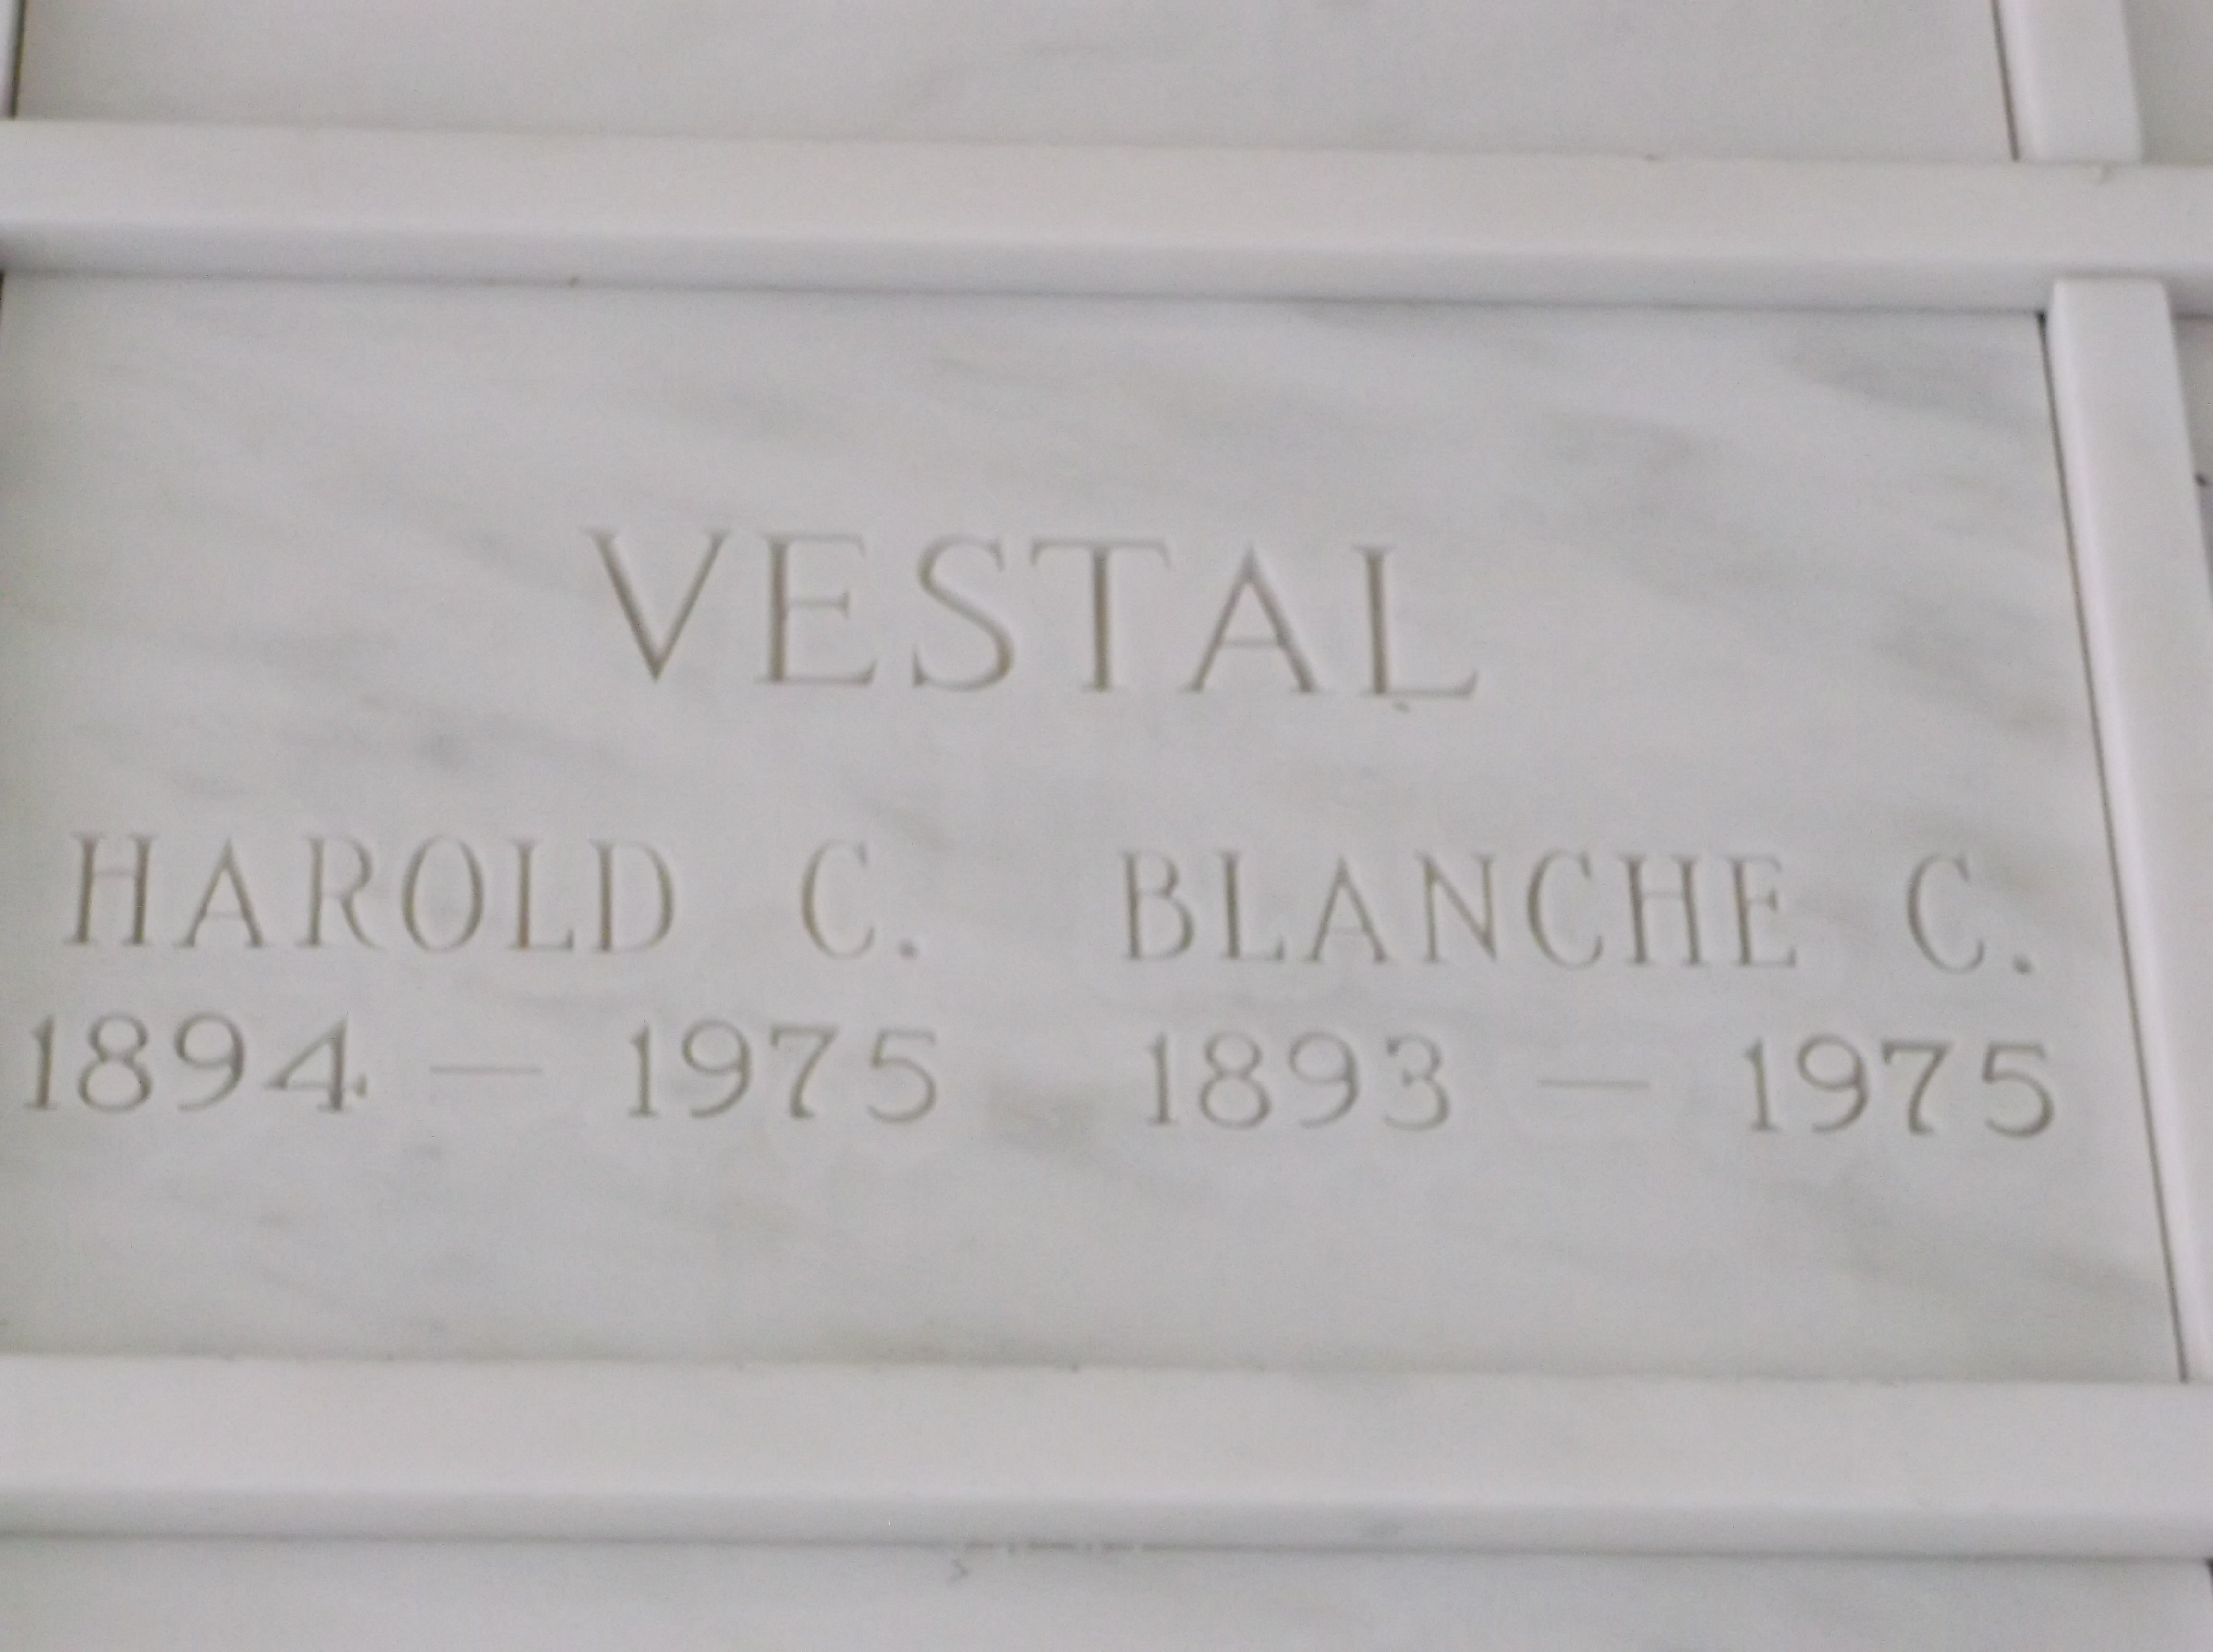 Harold C Vestal